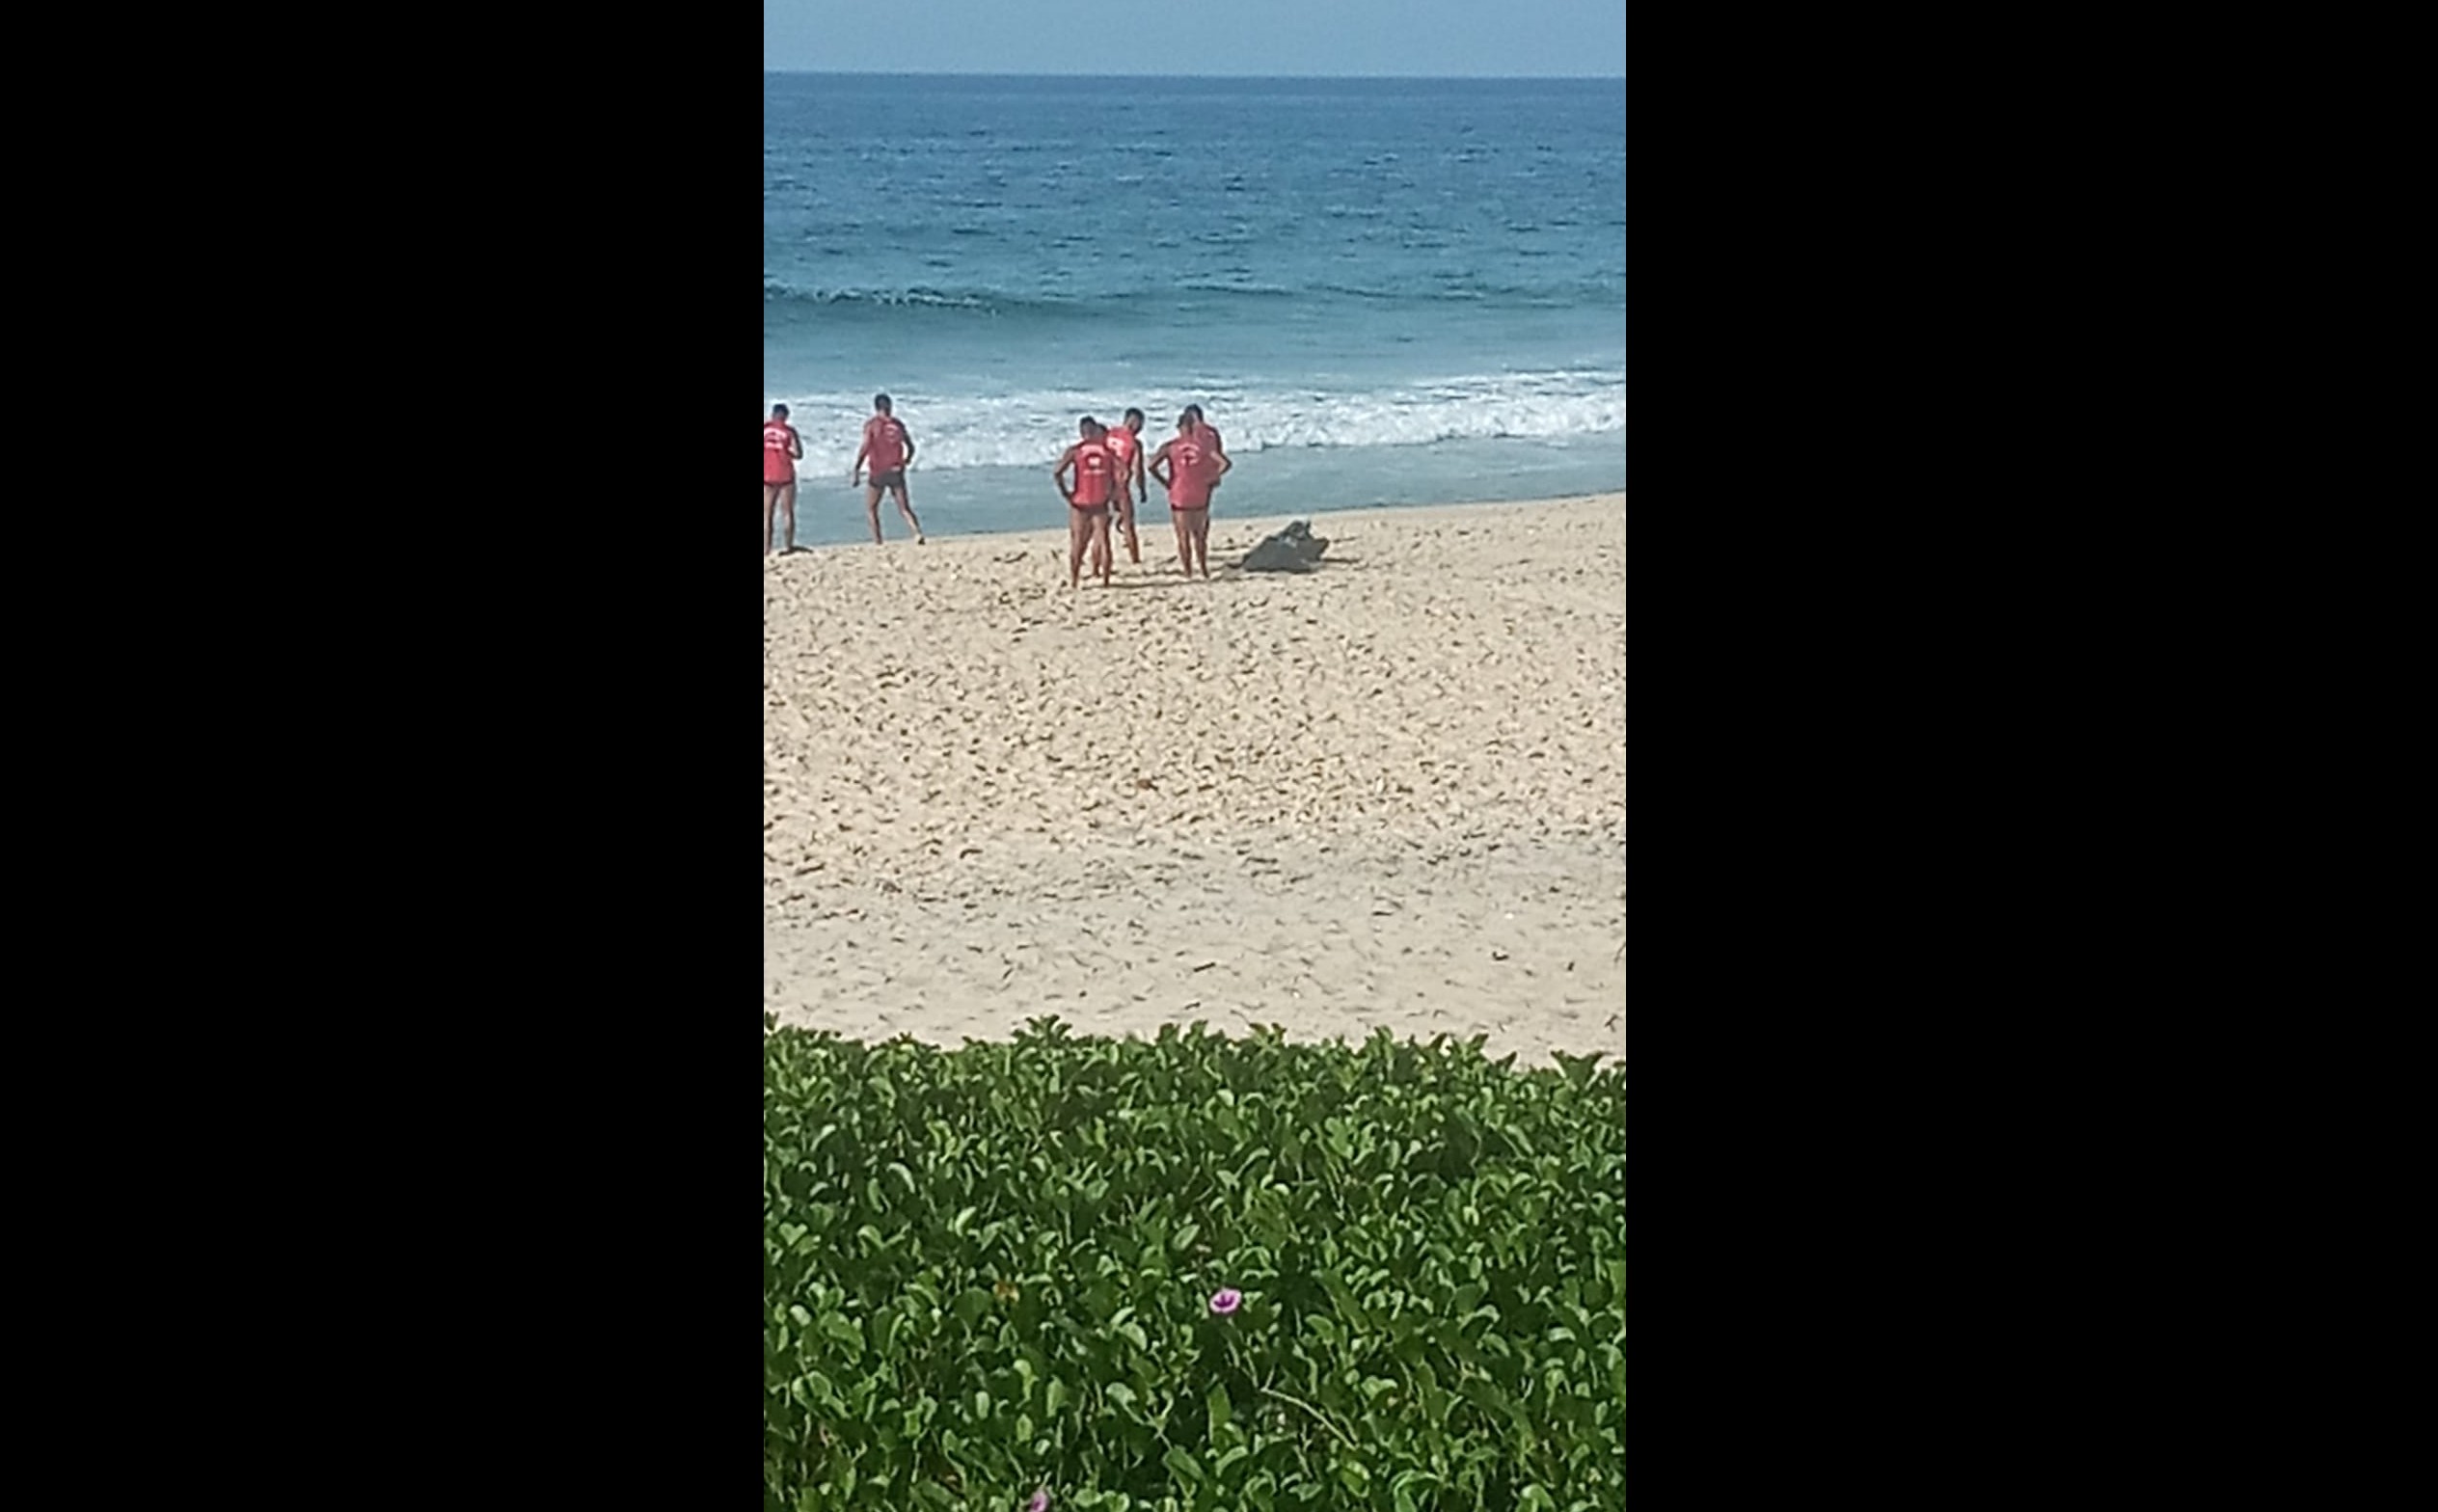 Pescadores encontram corpo em praia de Maricá, no RJ